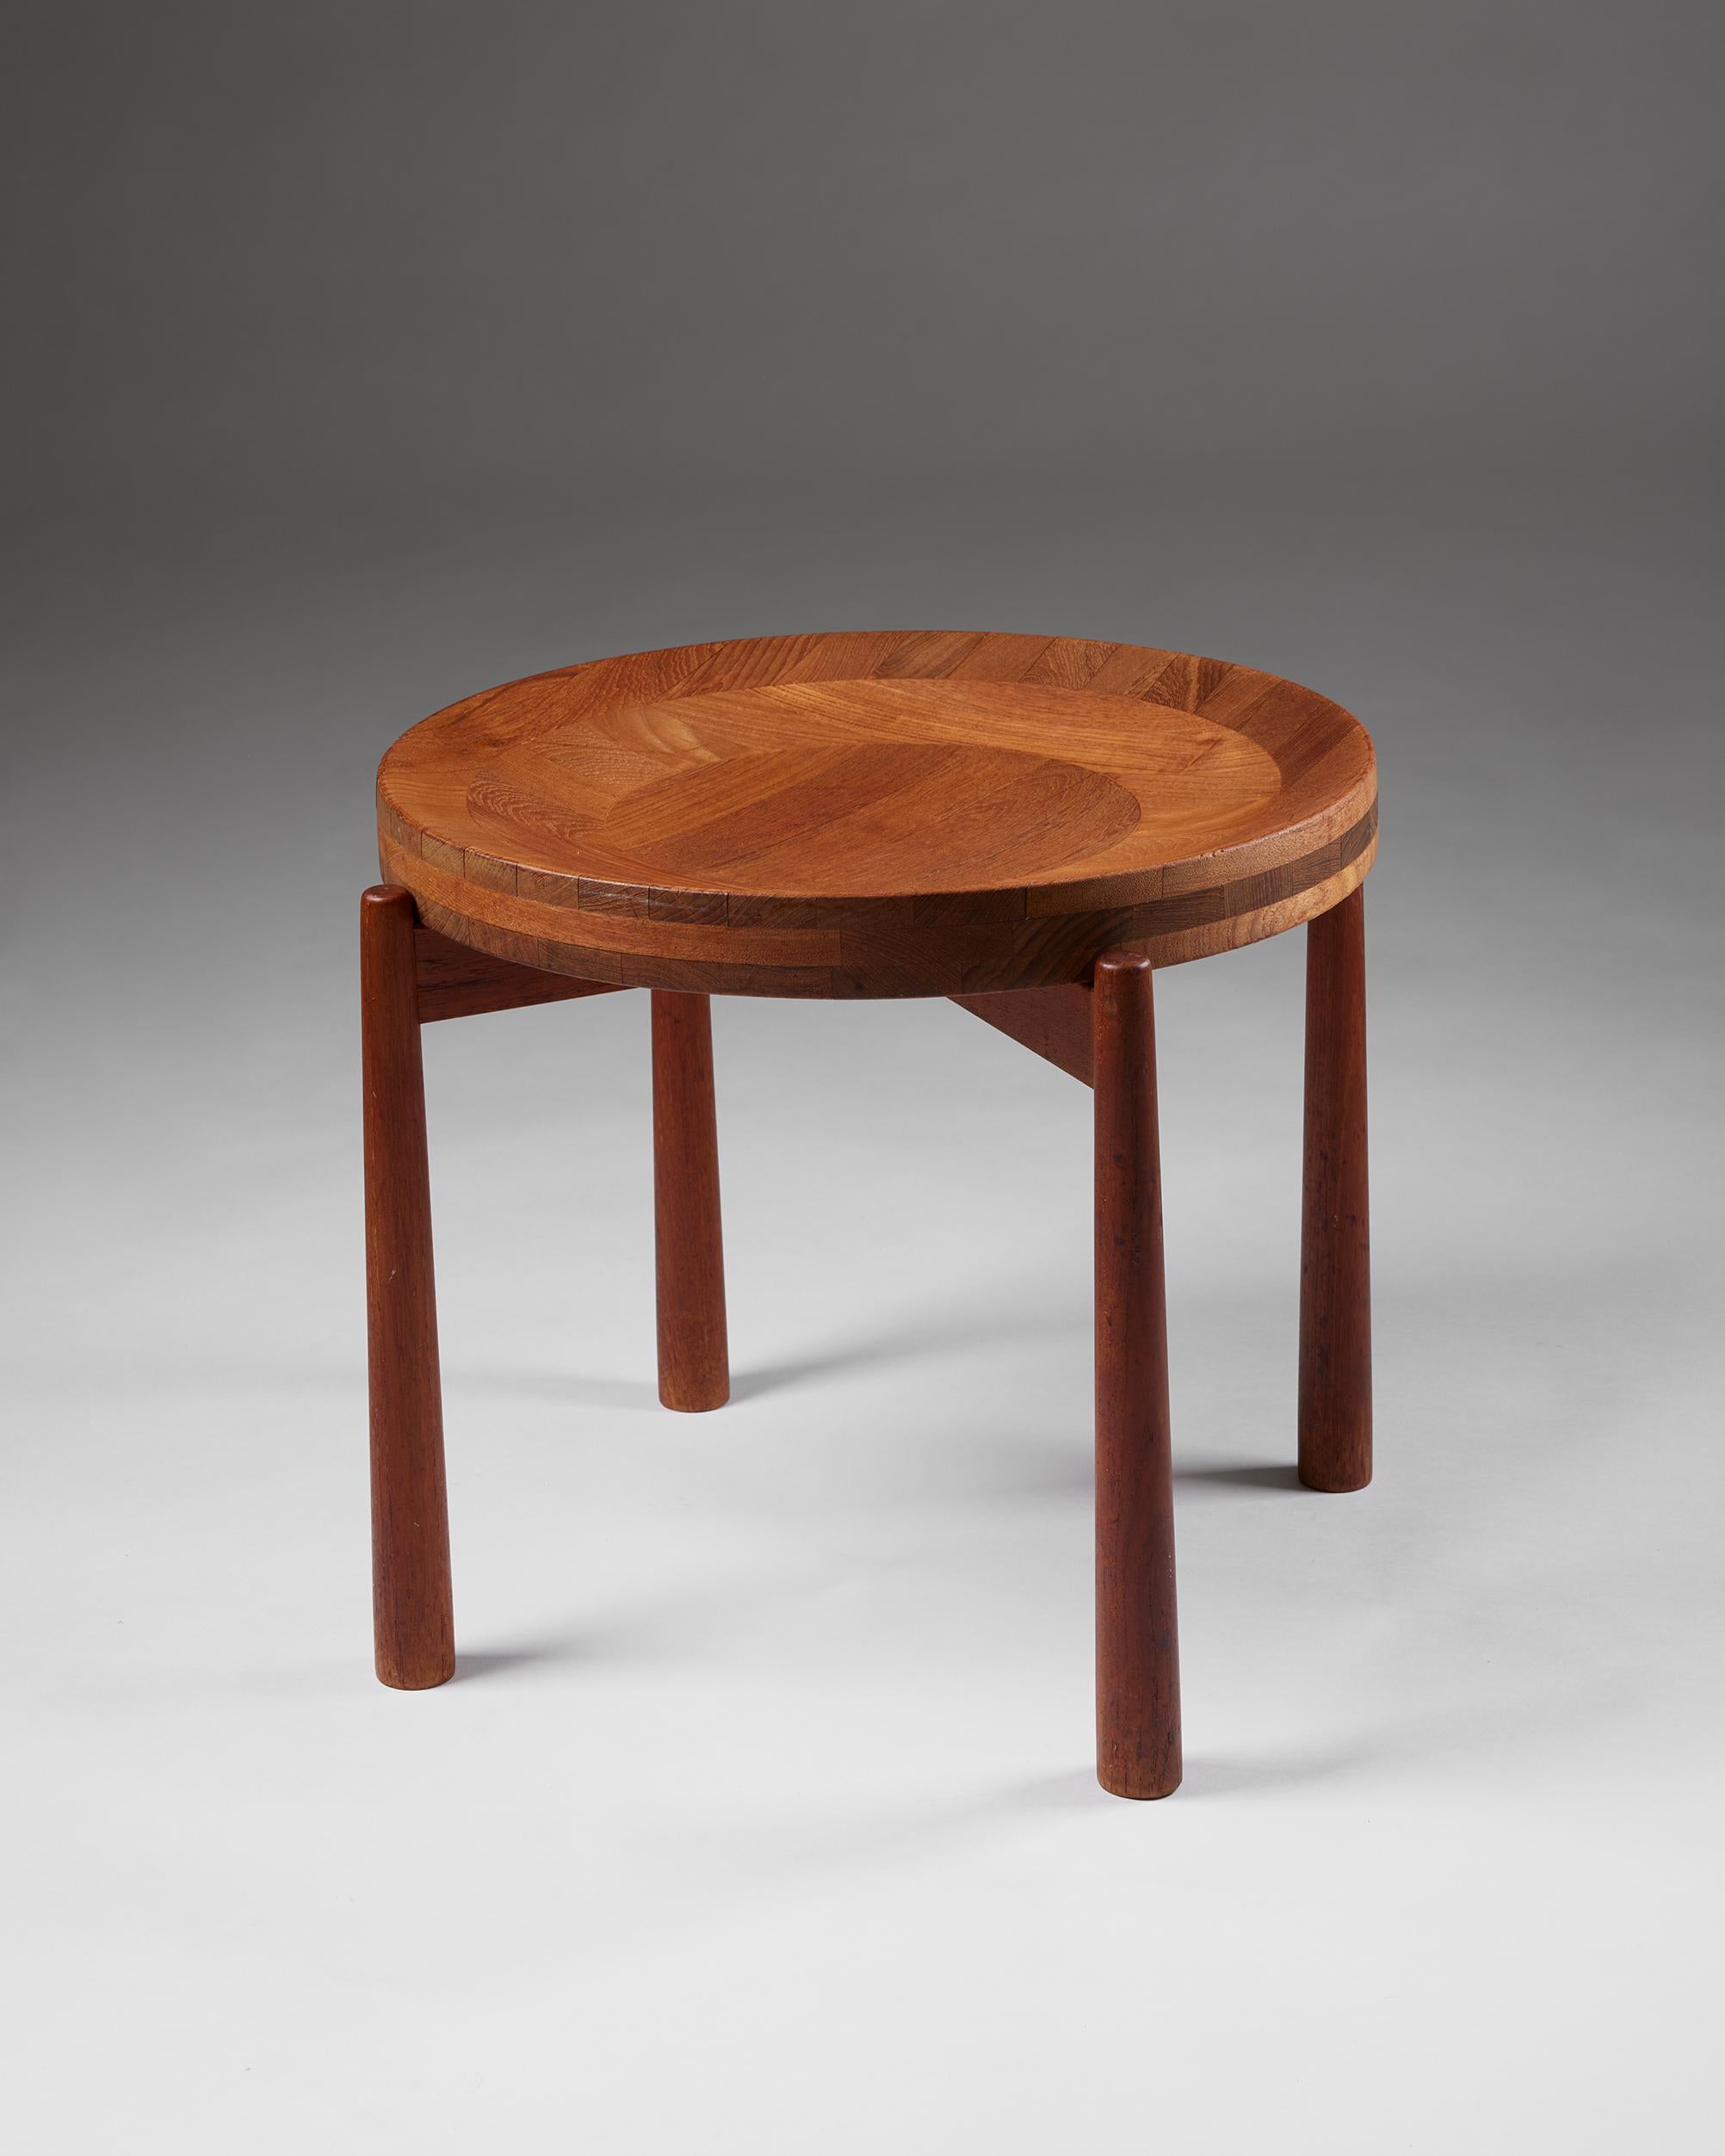 Table d'appoint conçue par Jens Quistgaard,
Danemark, années 1950

Teck.

Cette pièce de collection danoise se caractérise par un travail du bois exquis et un plateau amovible de forme magnifique qui peut faire office de bol. Le sculpteur Jens